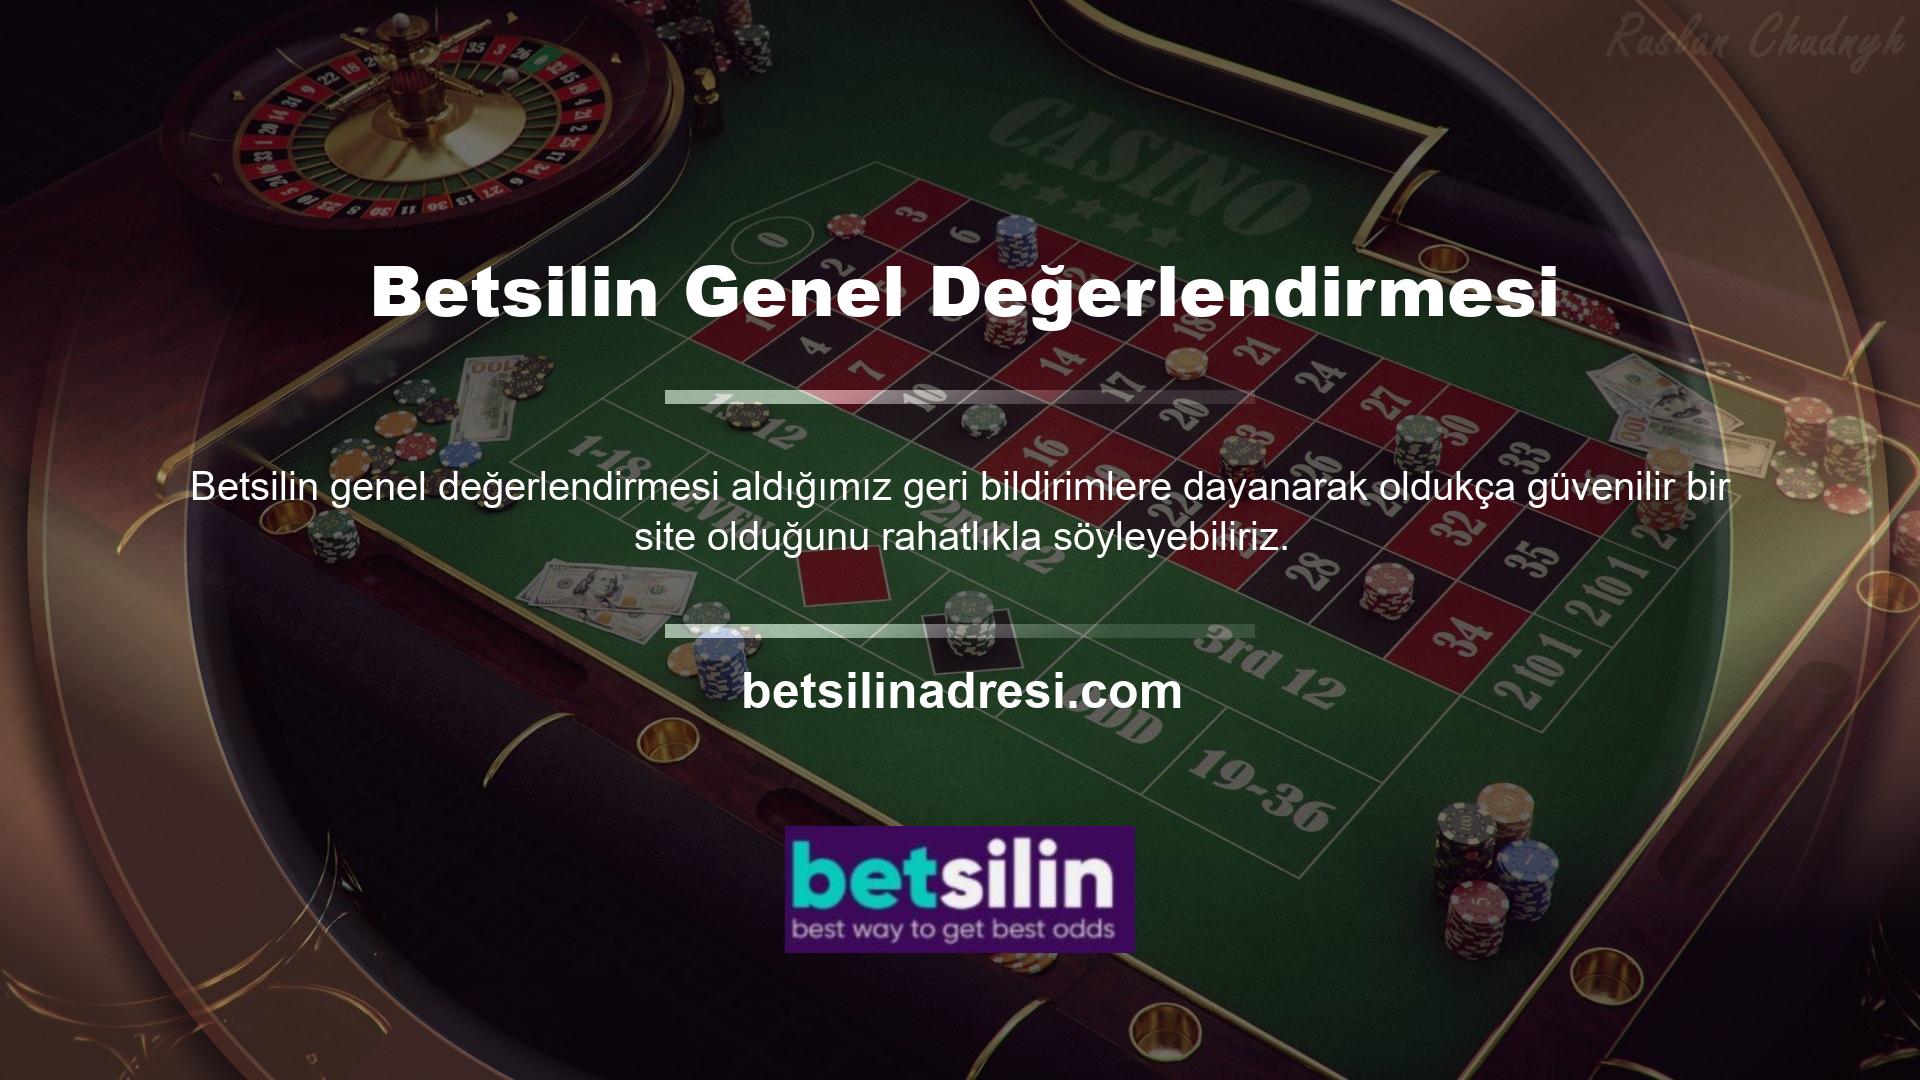 Casino, casino, canlı casino ve poker hizmetleri sunmaktadır